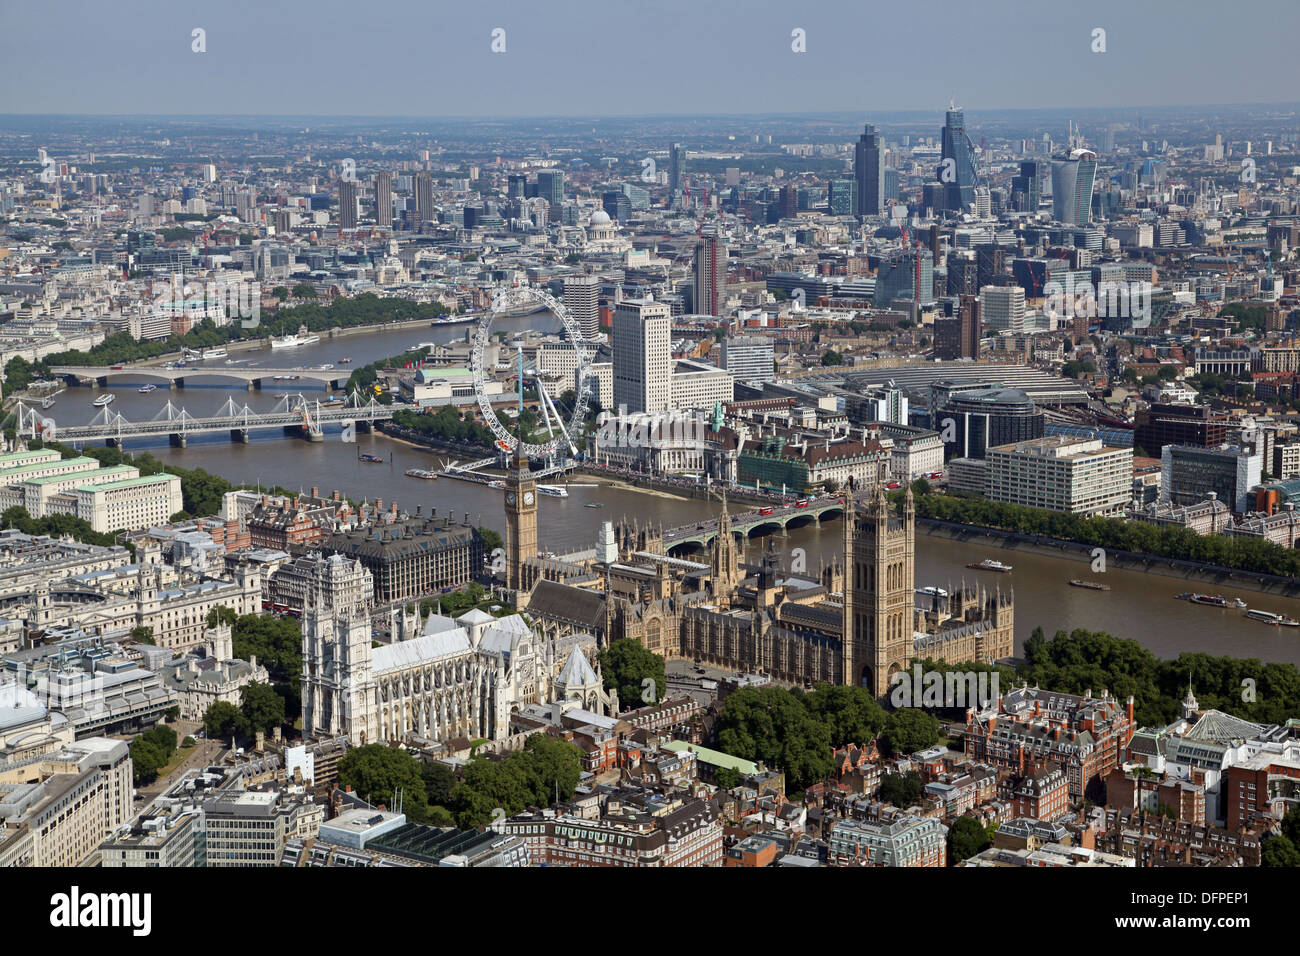 Vue aérienne de l'abbaye de Westminster, les chambres du Parlement, le London Eye, Westminster Bridge, South Bank, Thames & Ville de Londres Banque D'Images